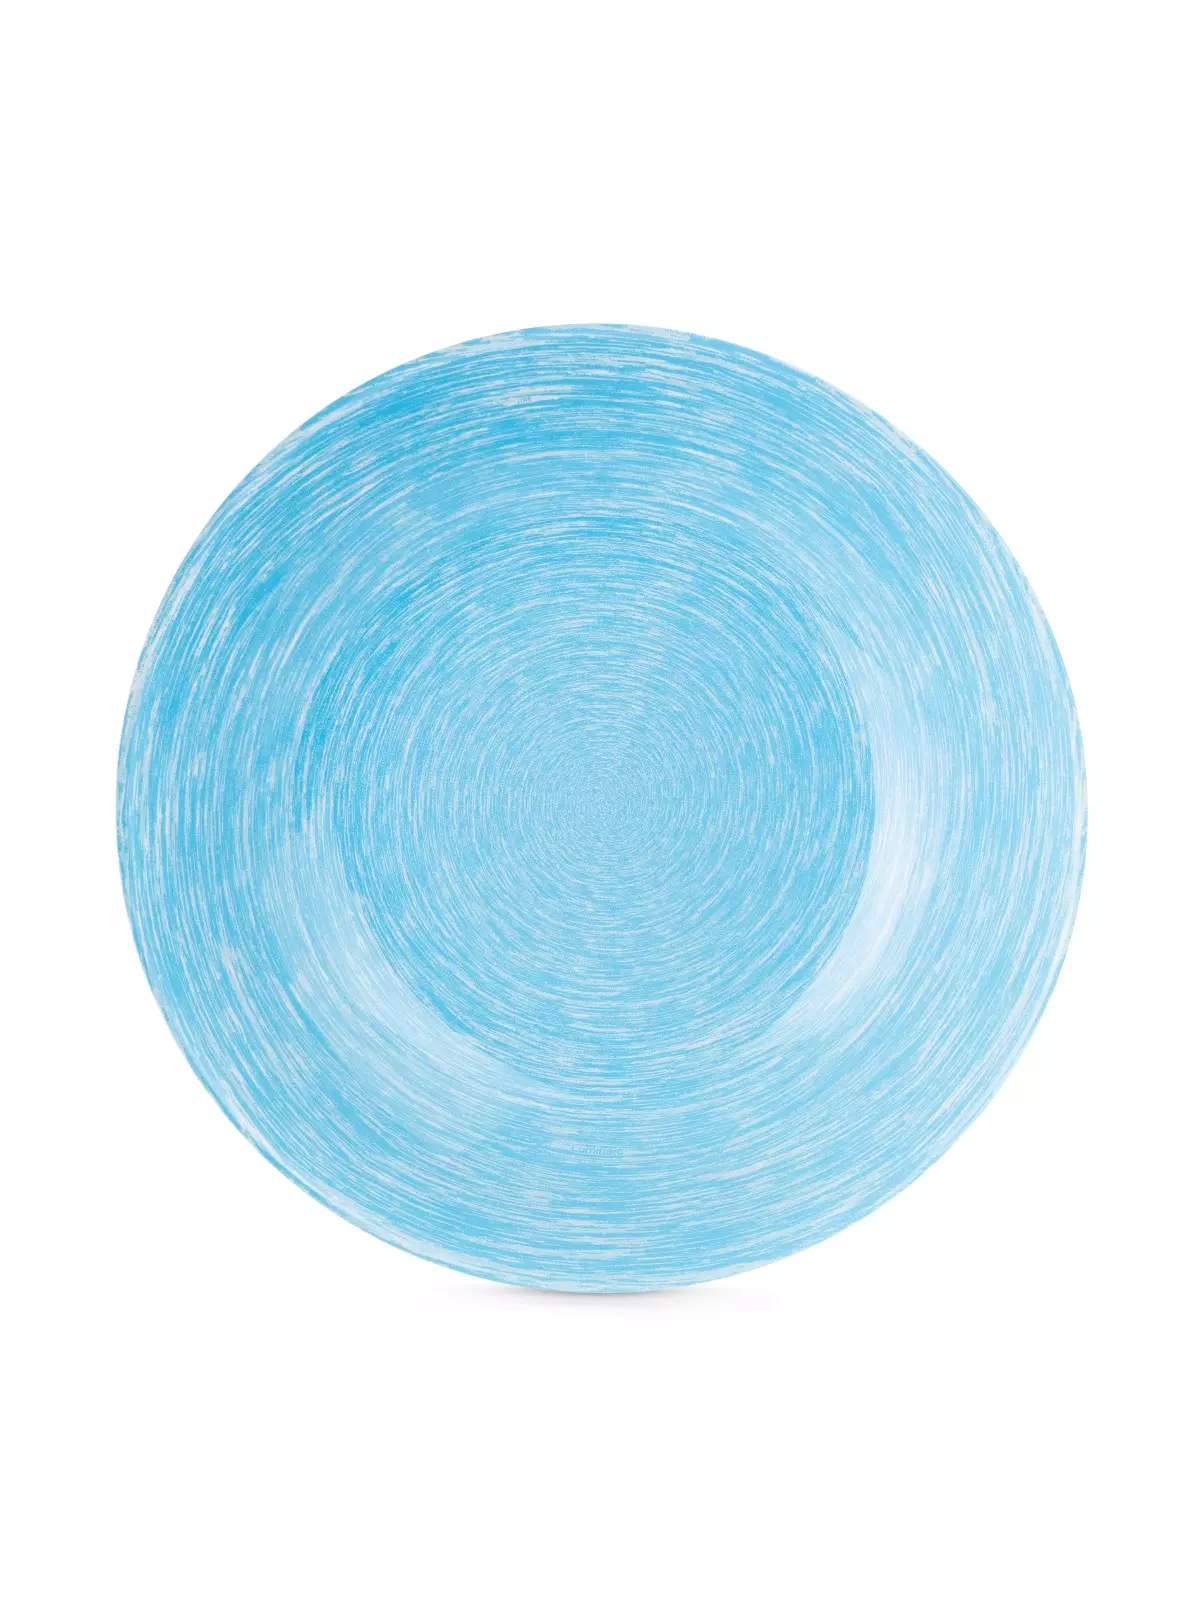 Тарелка глубокая 20 см Brush Mania Light Blue Luminarc Q6013